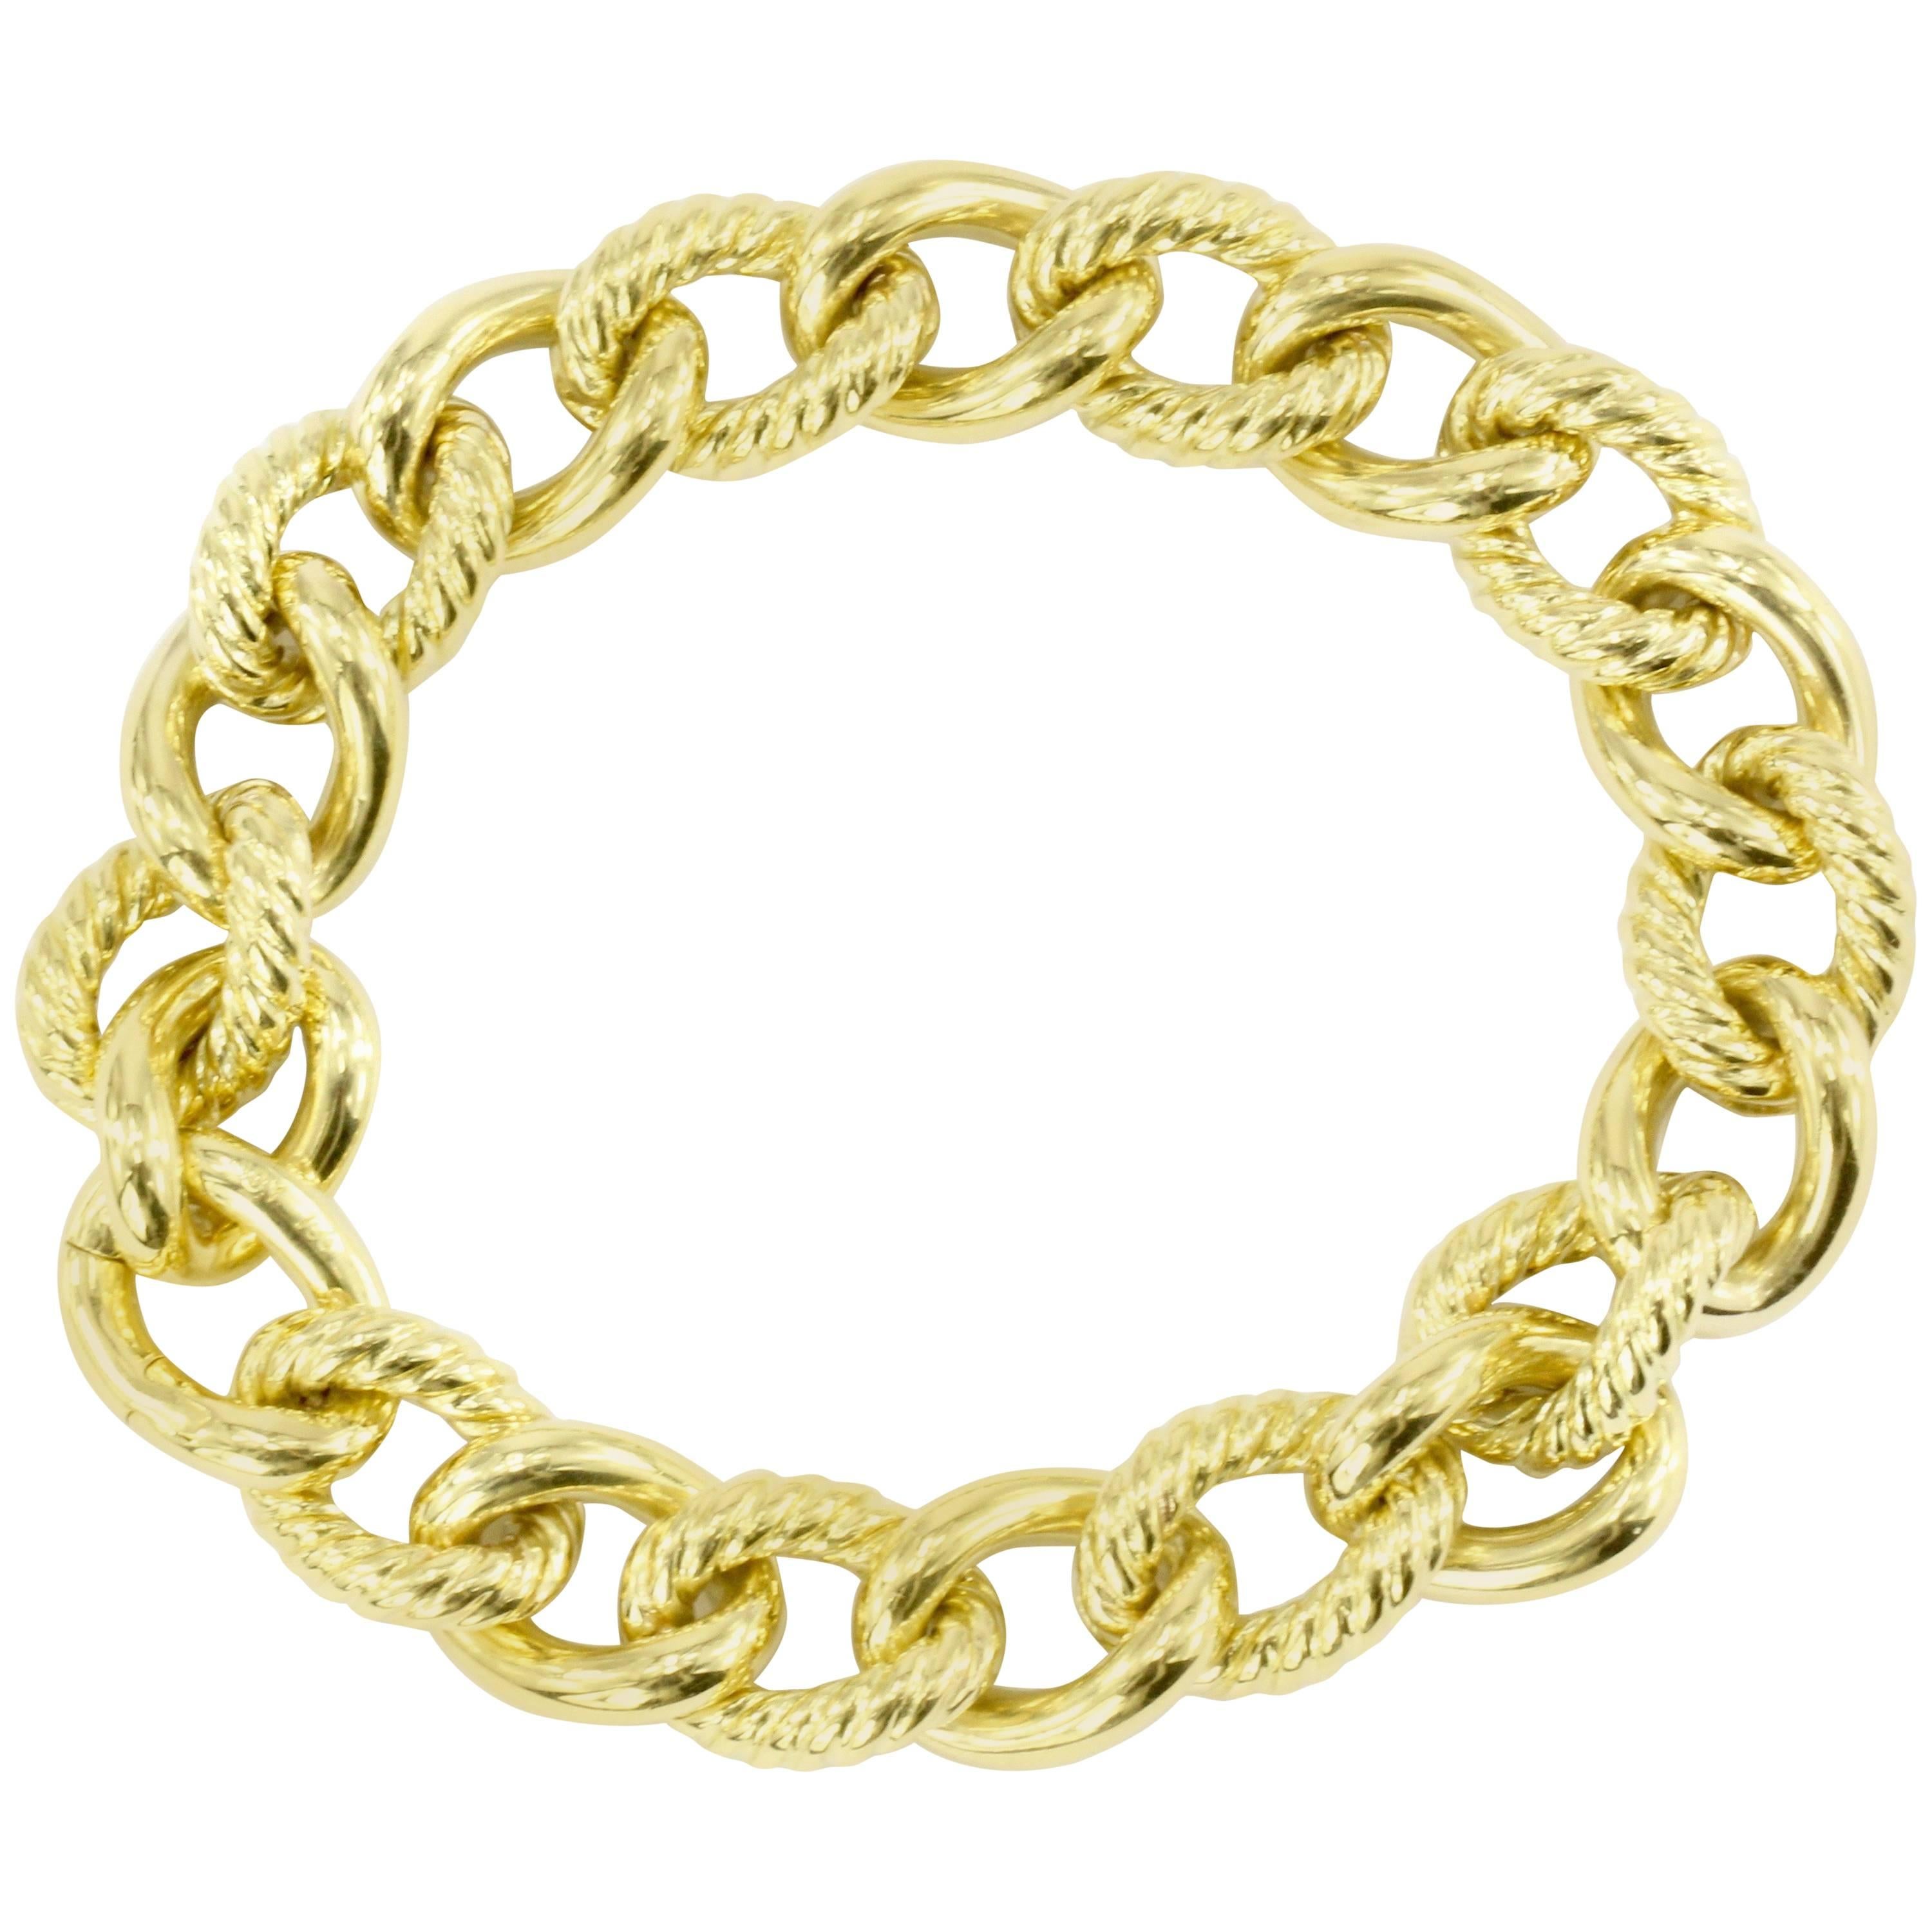 David Yurman 18 Karat Yellow Gold Small Curb Chain Bracelet